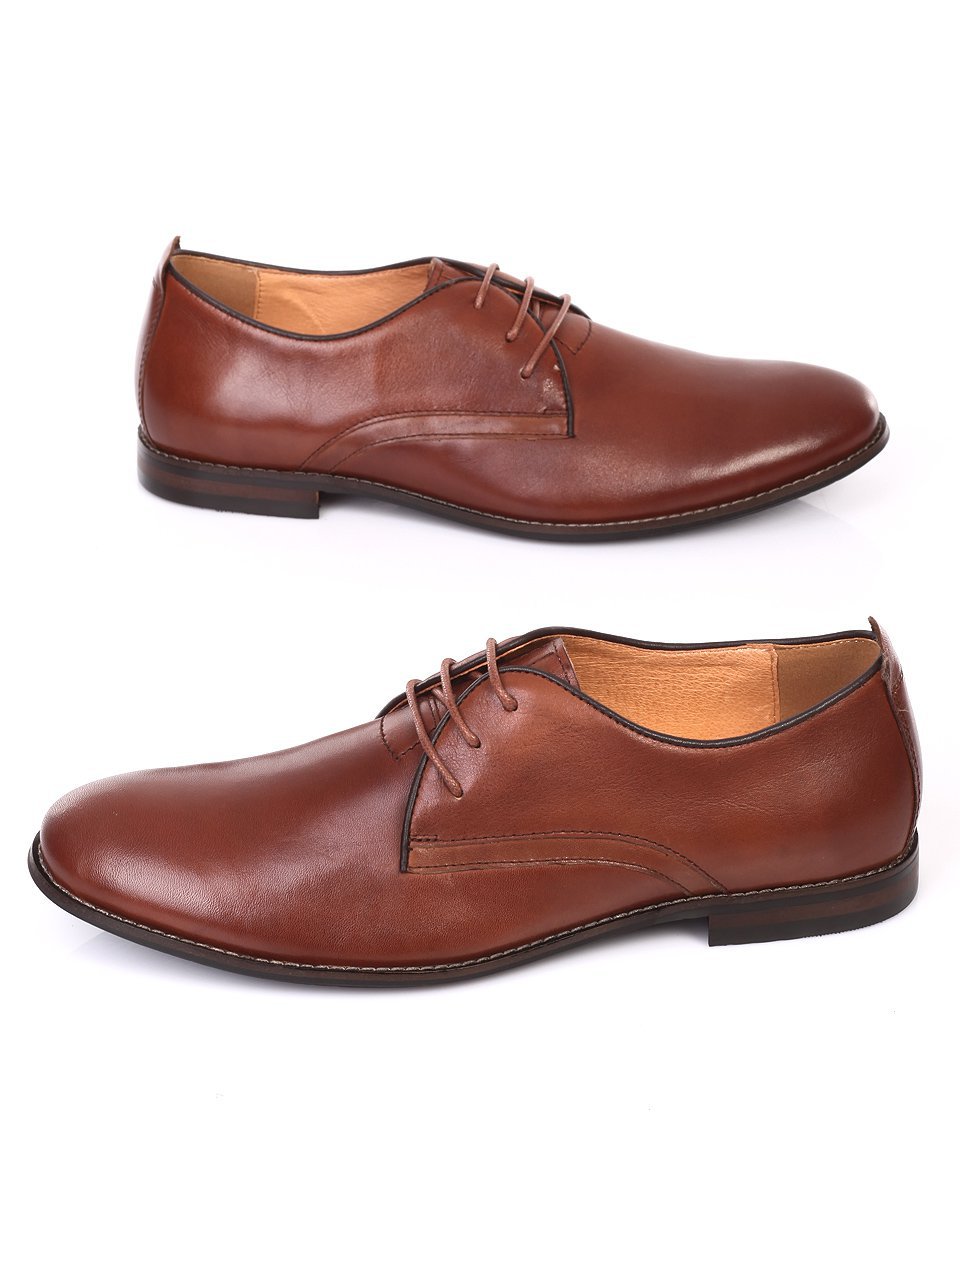 Елегантни мъжки обувки от естествена кожа 7N-18391 brown